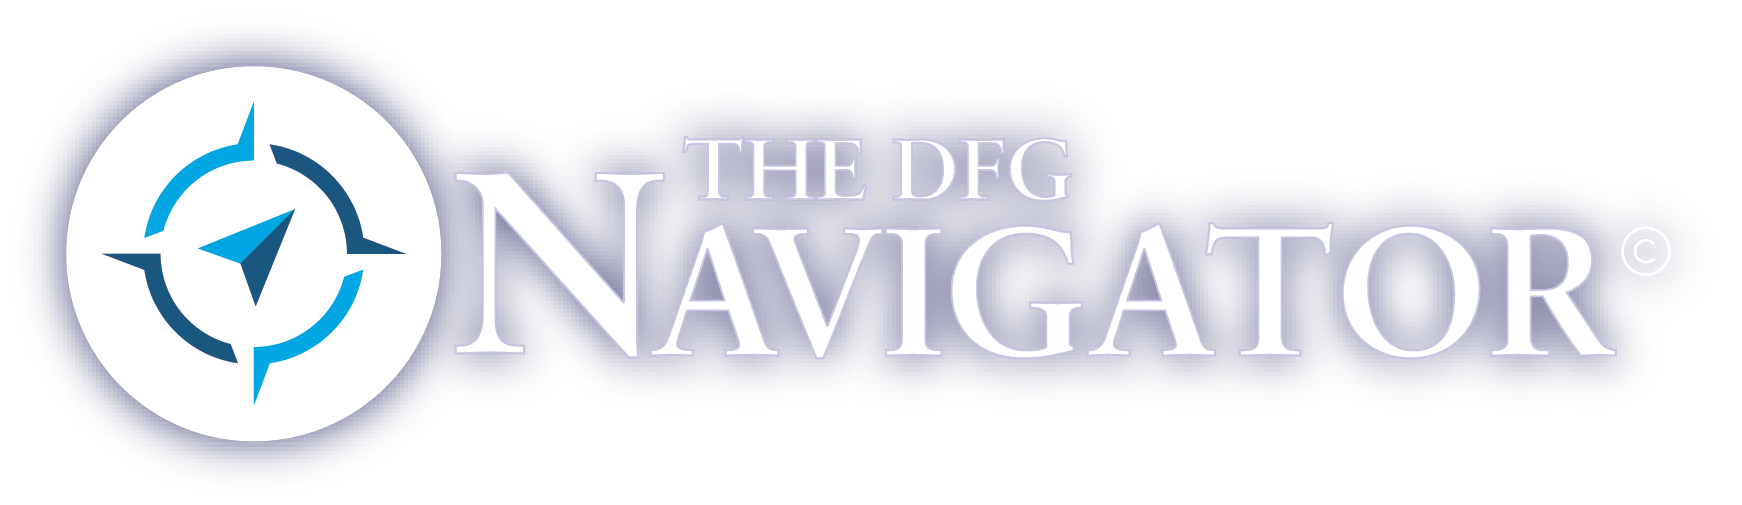 The Davis Financial Group Navigator Newsletter